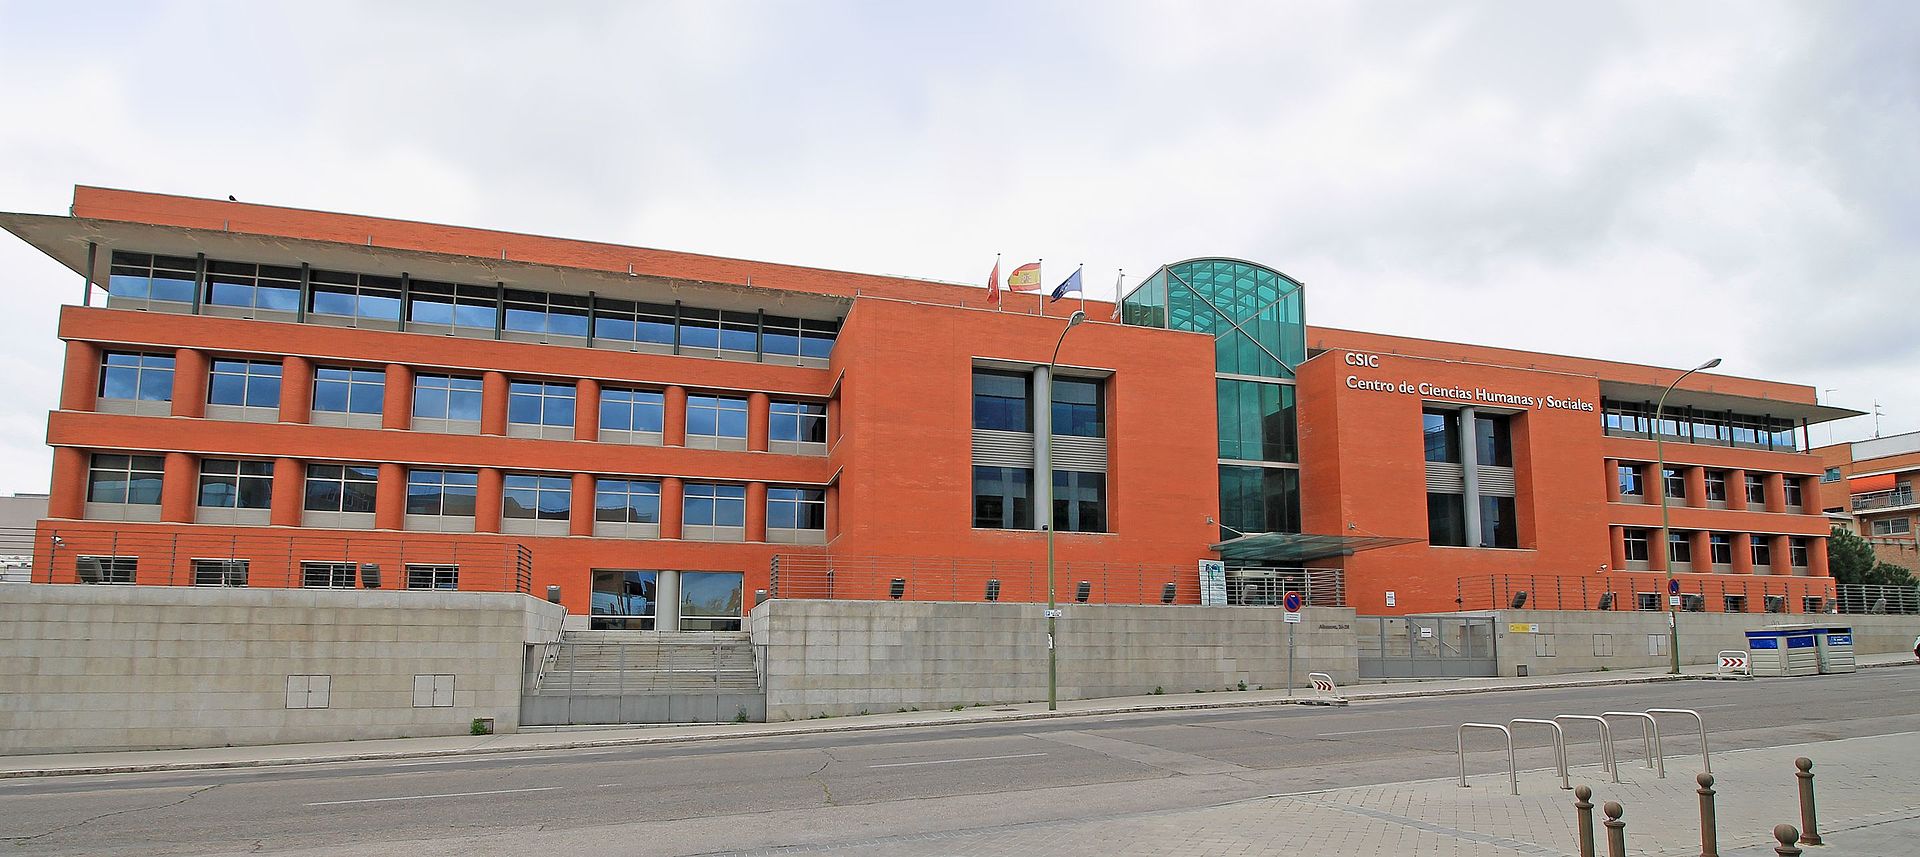 Sede del Centro de Ciencias Humanas y Sociales (CCHS) del CSIC, al que pertenece el IPP-CSIC, en la calle Albasanz de Madrid / Wikipedia/ Luis Sanz